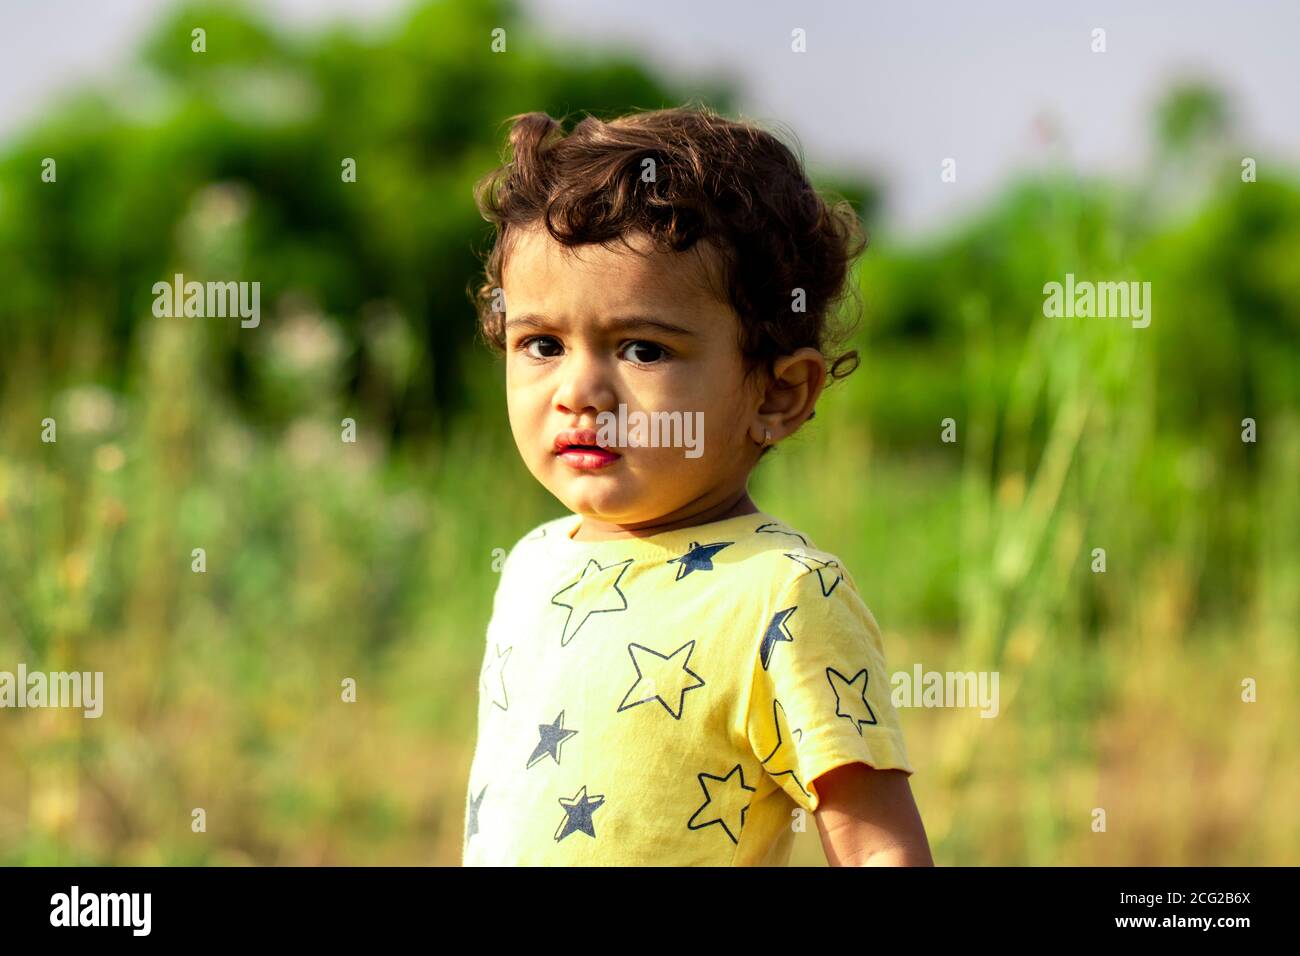 Ein trauriges kleines indisches Kind, das wütend auf die Kamera schaut, asiatische Kinder in der Natur Stockfoto